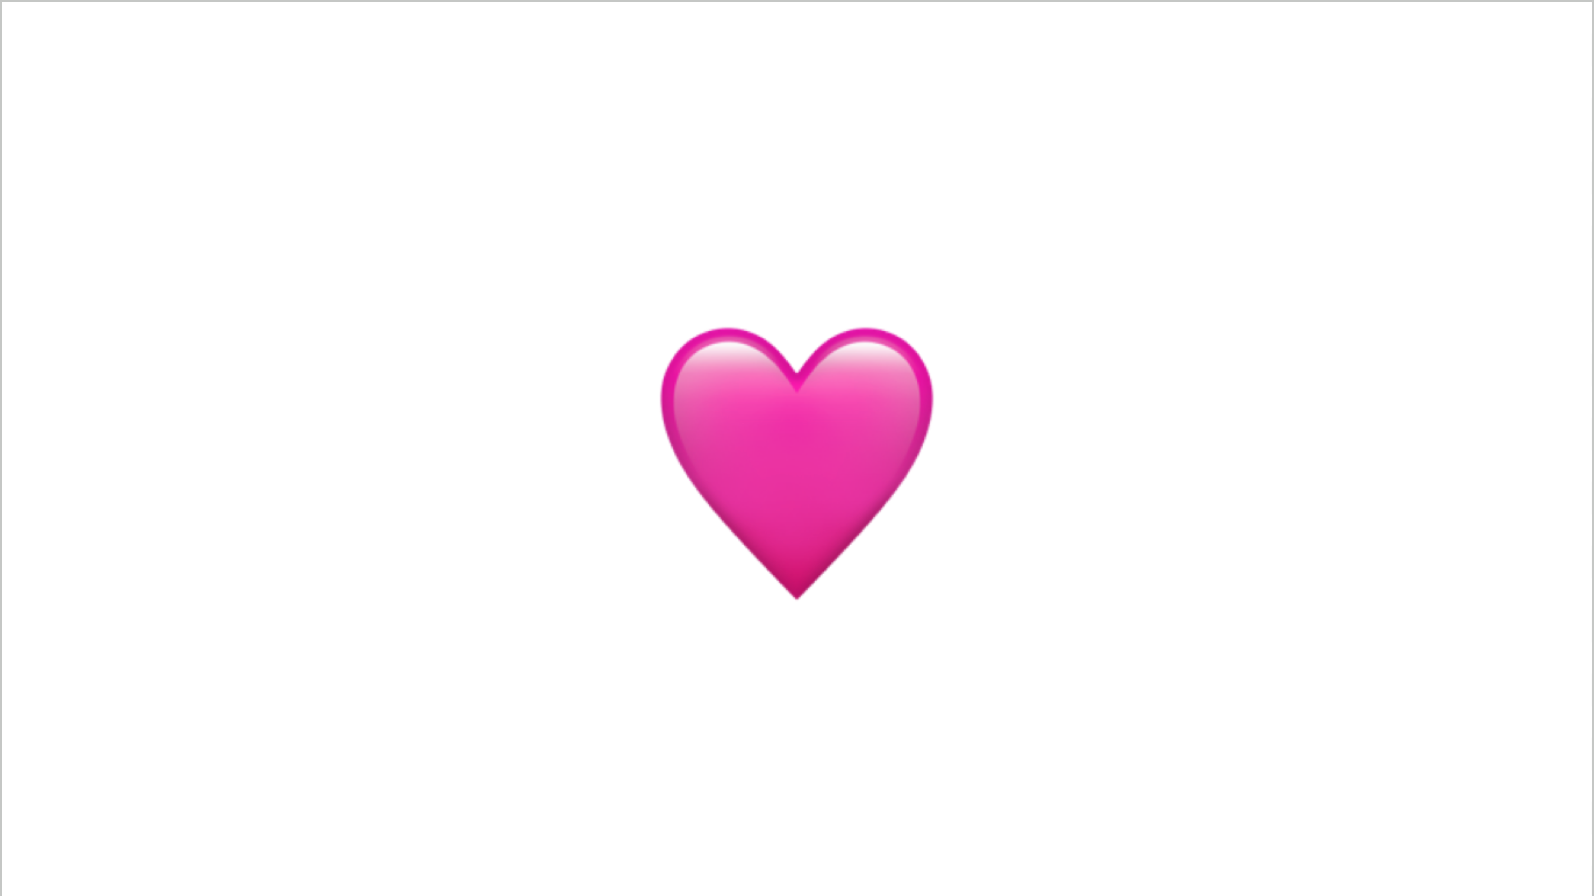 A heart emoji